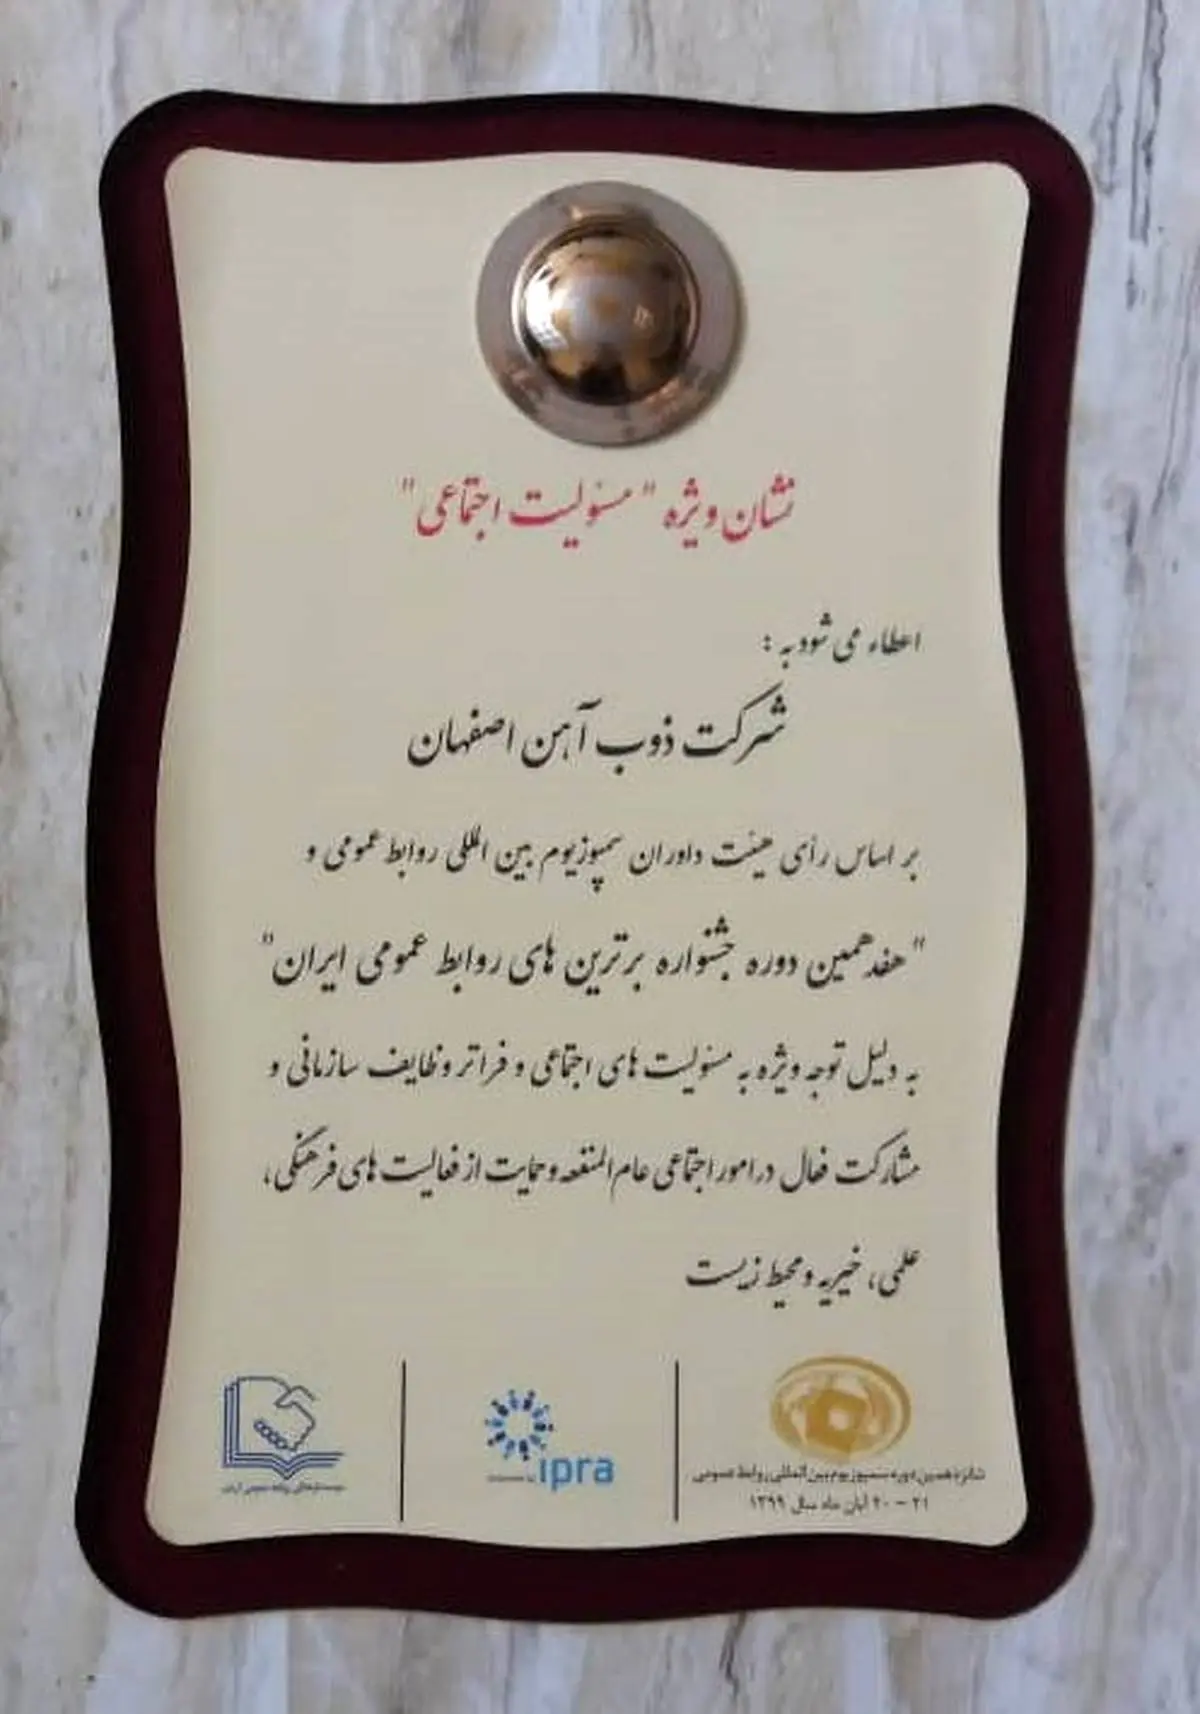 
ذوب آهن اصفهان نشان ویژه مسئولیت اجتماعی را کسب نمود